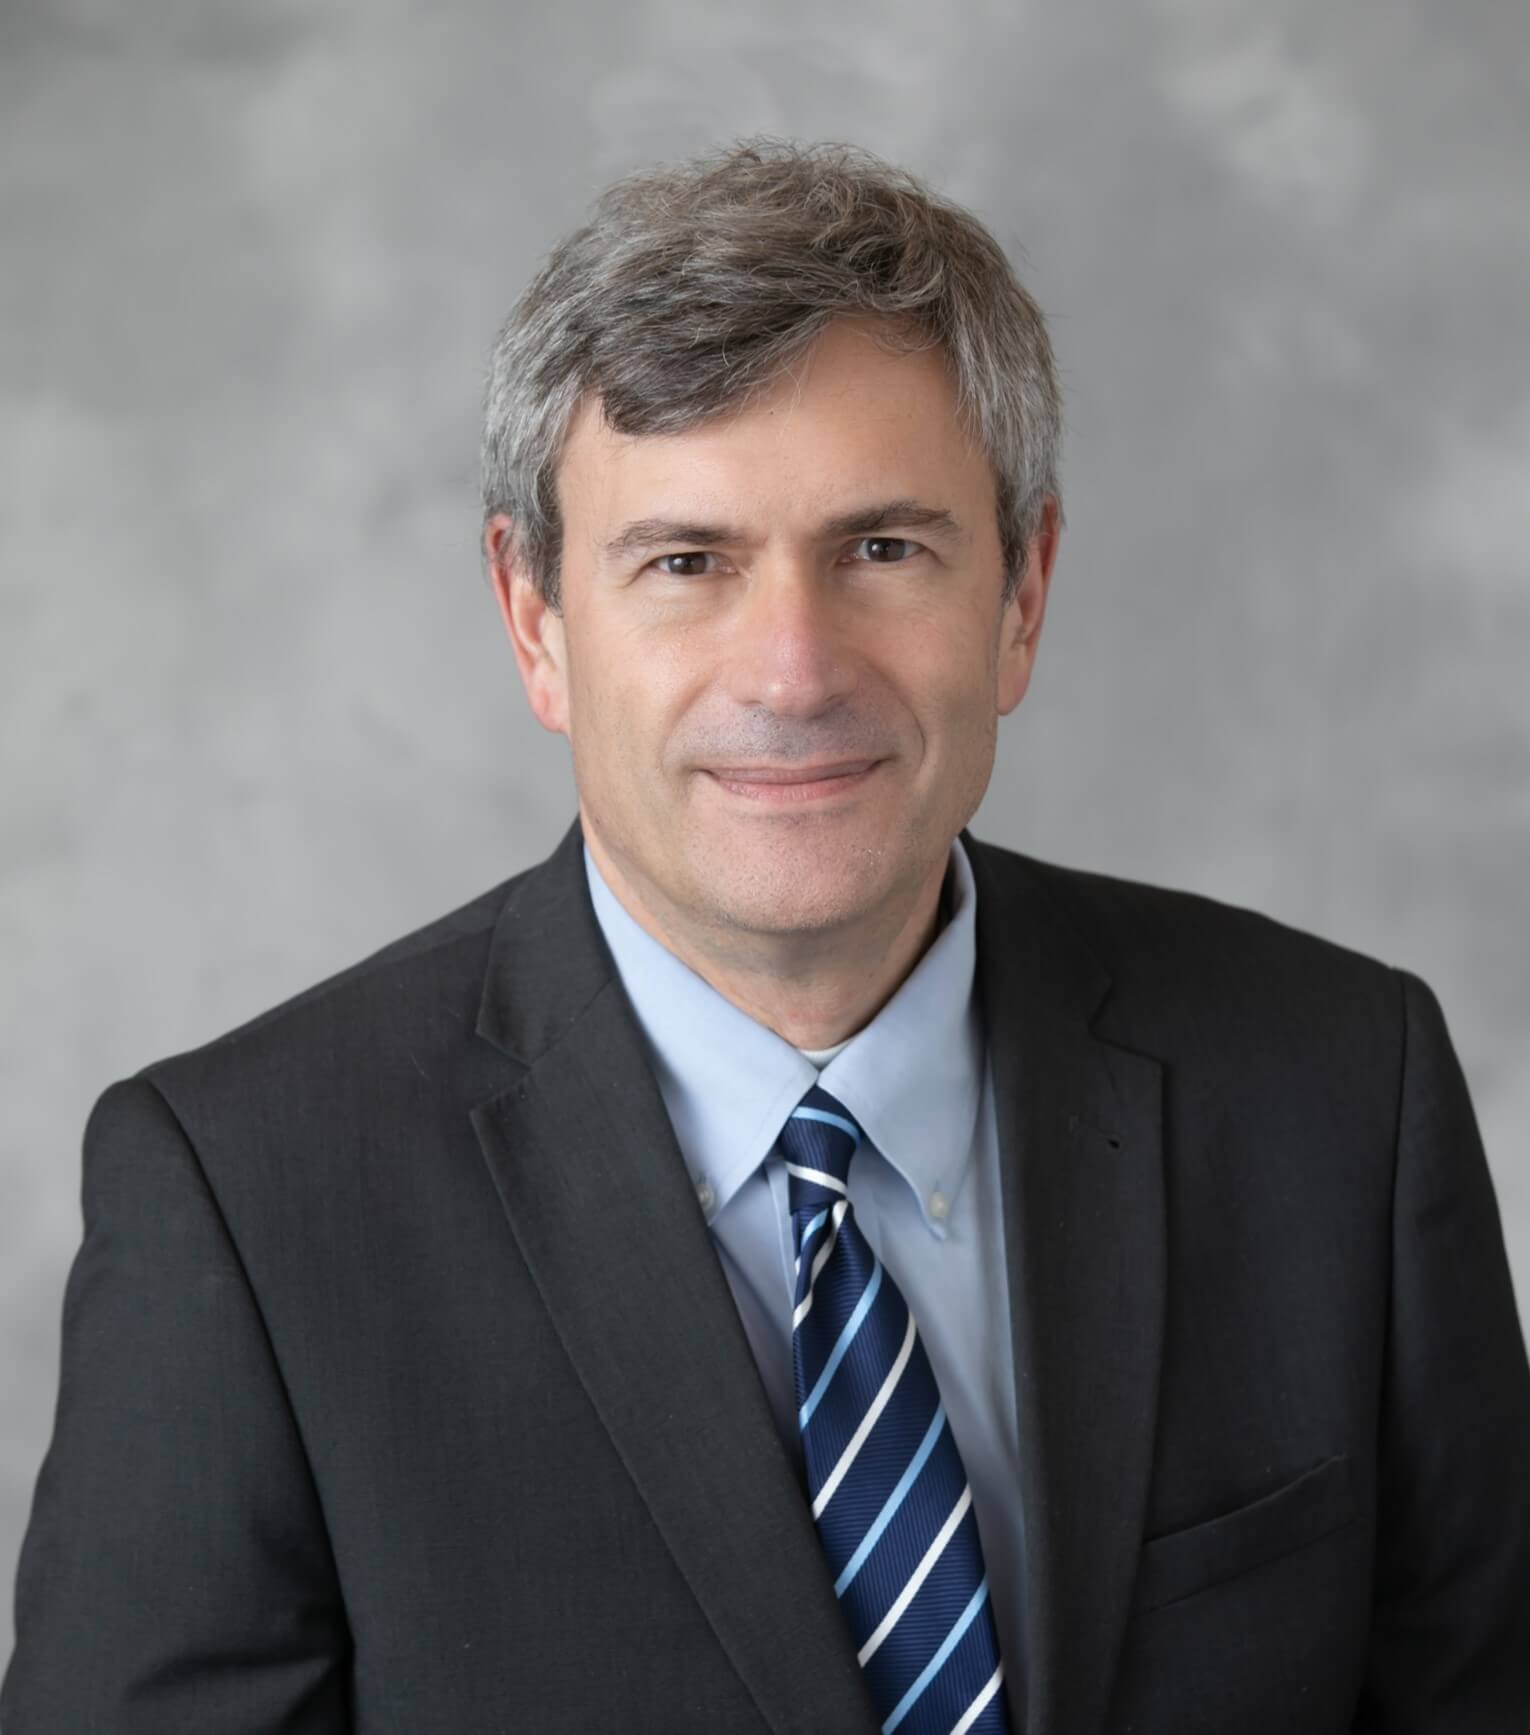 Russell N. Van Gelder, MD, PhD